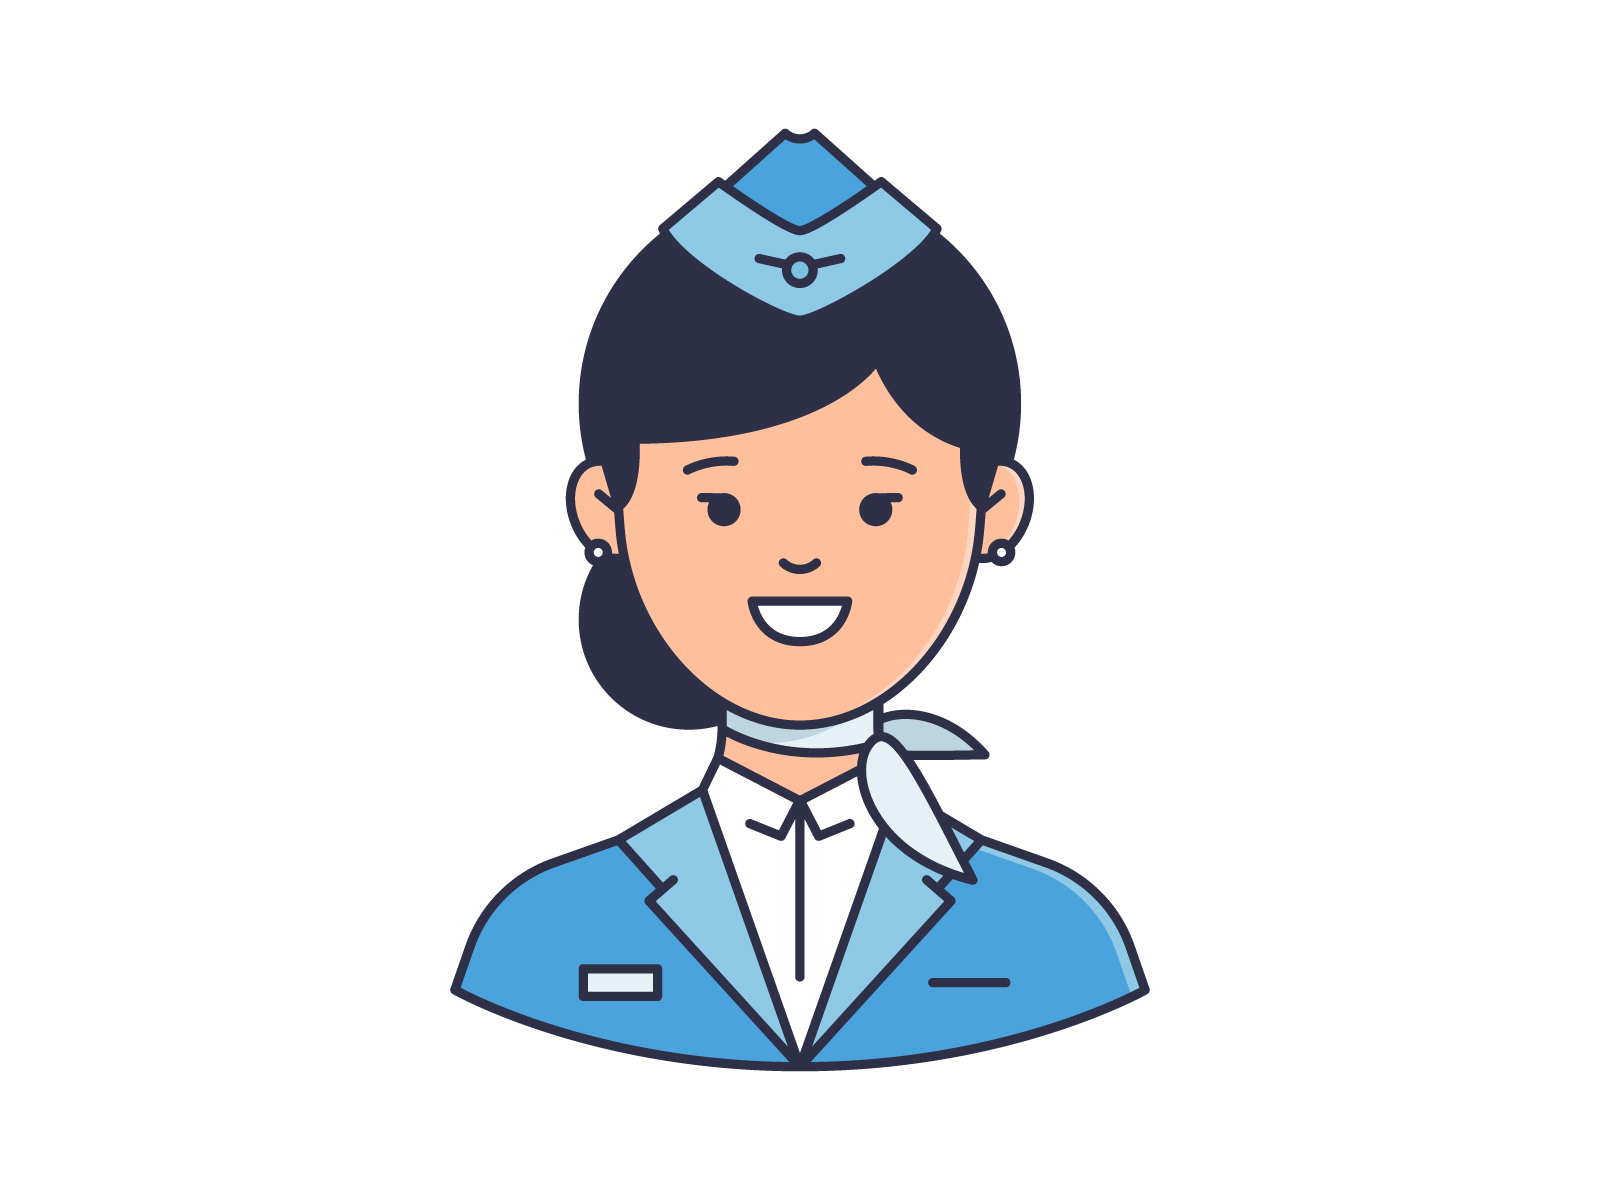 flight attendant clipart